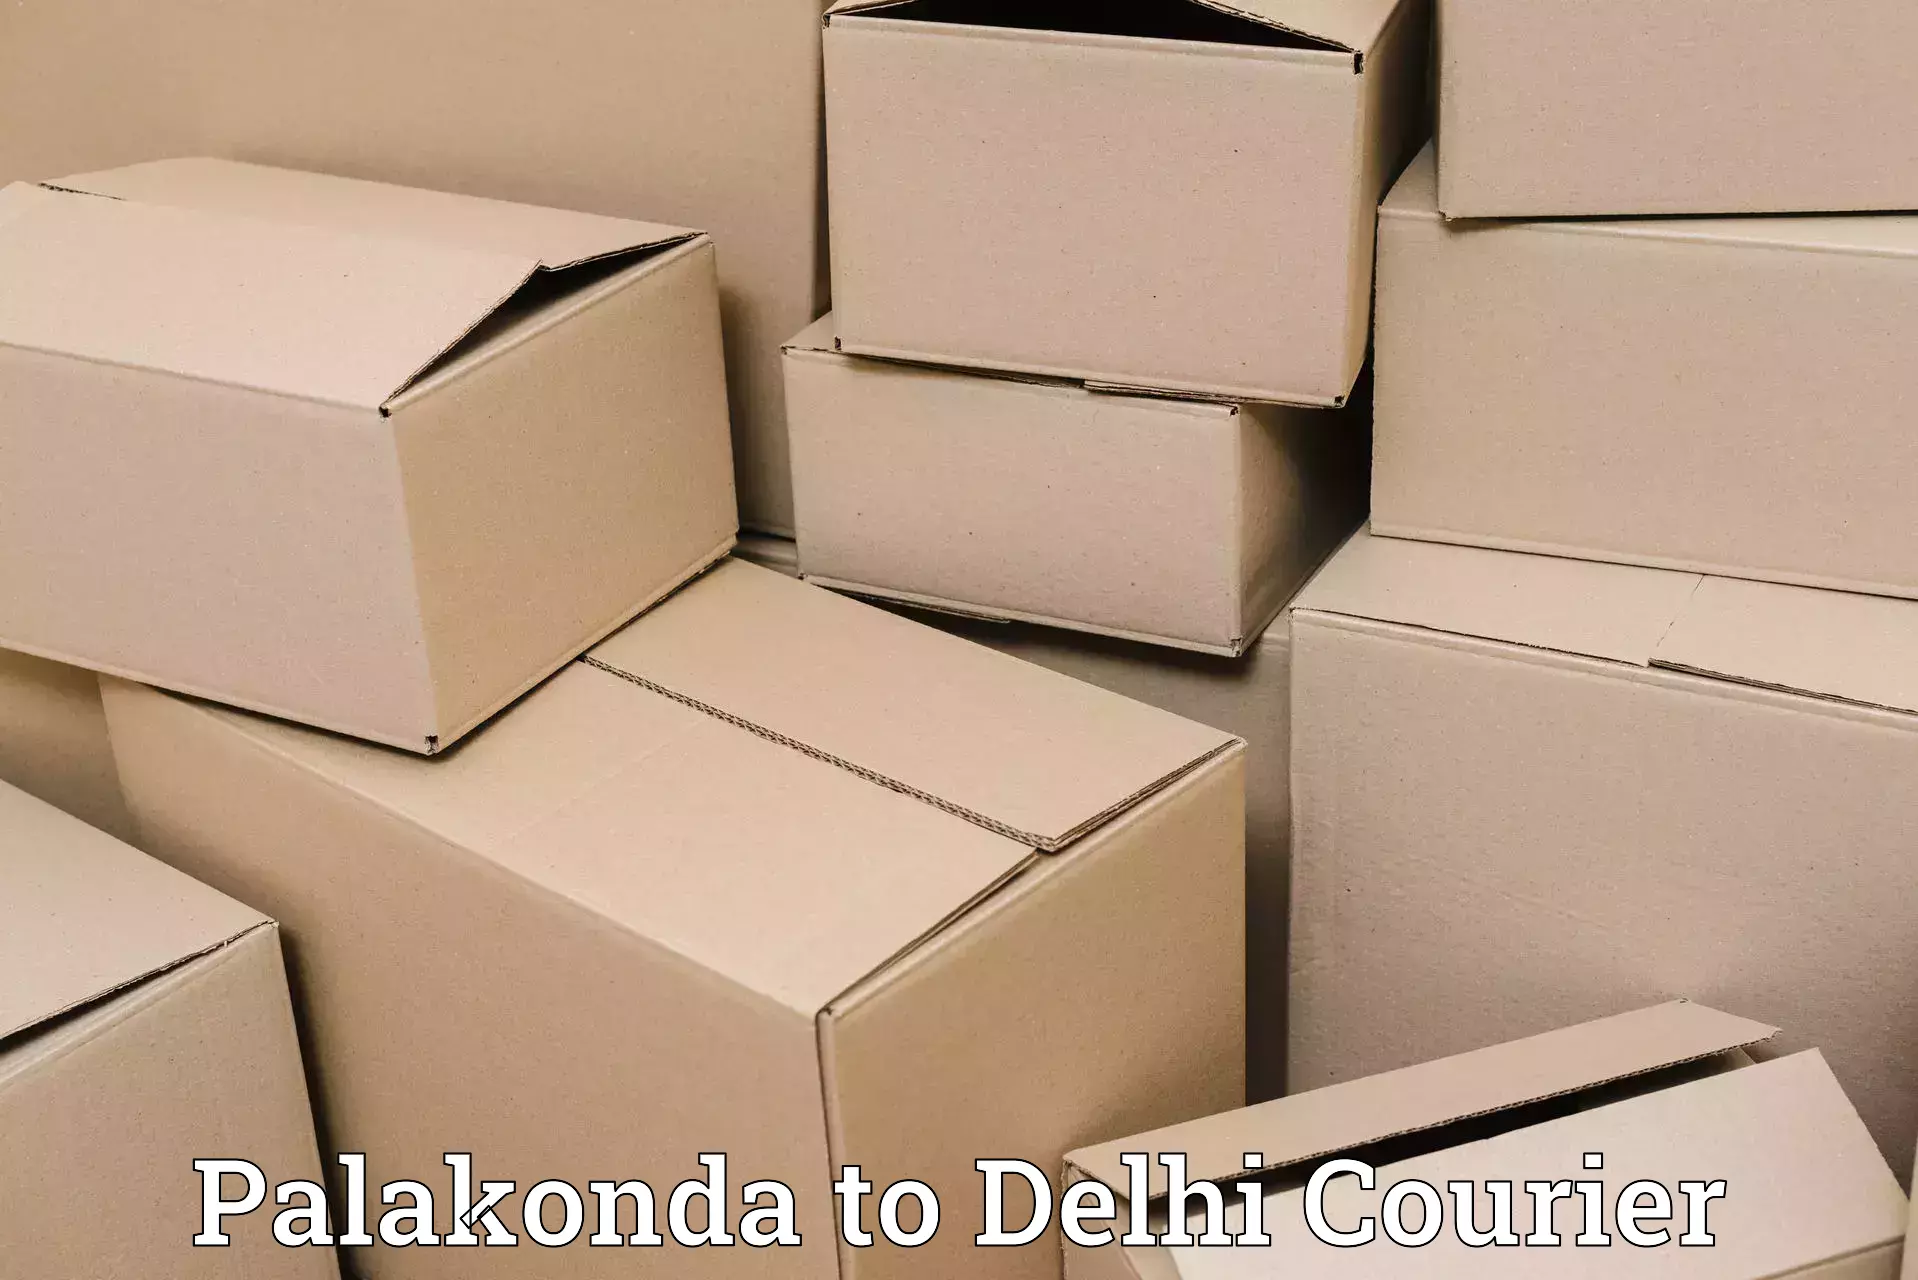 Global shipping solutions Palakonda to IIT Delhi